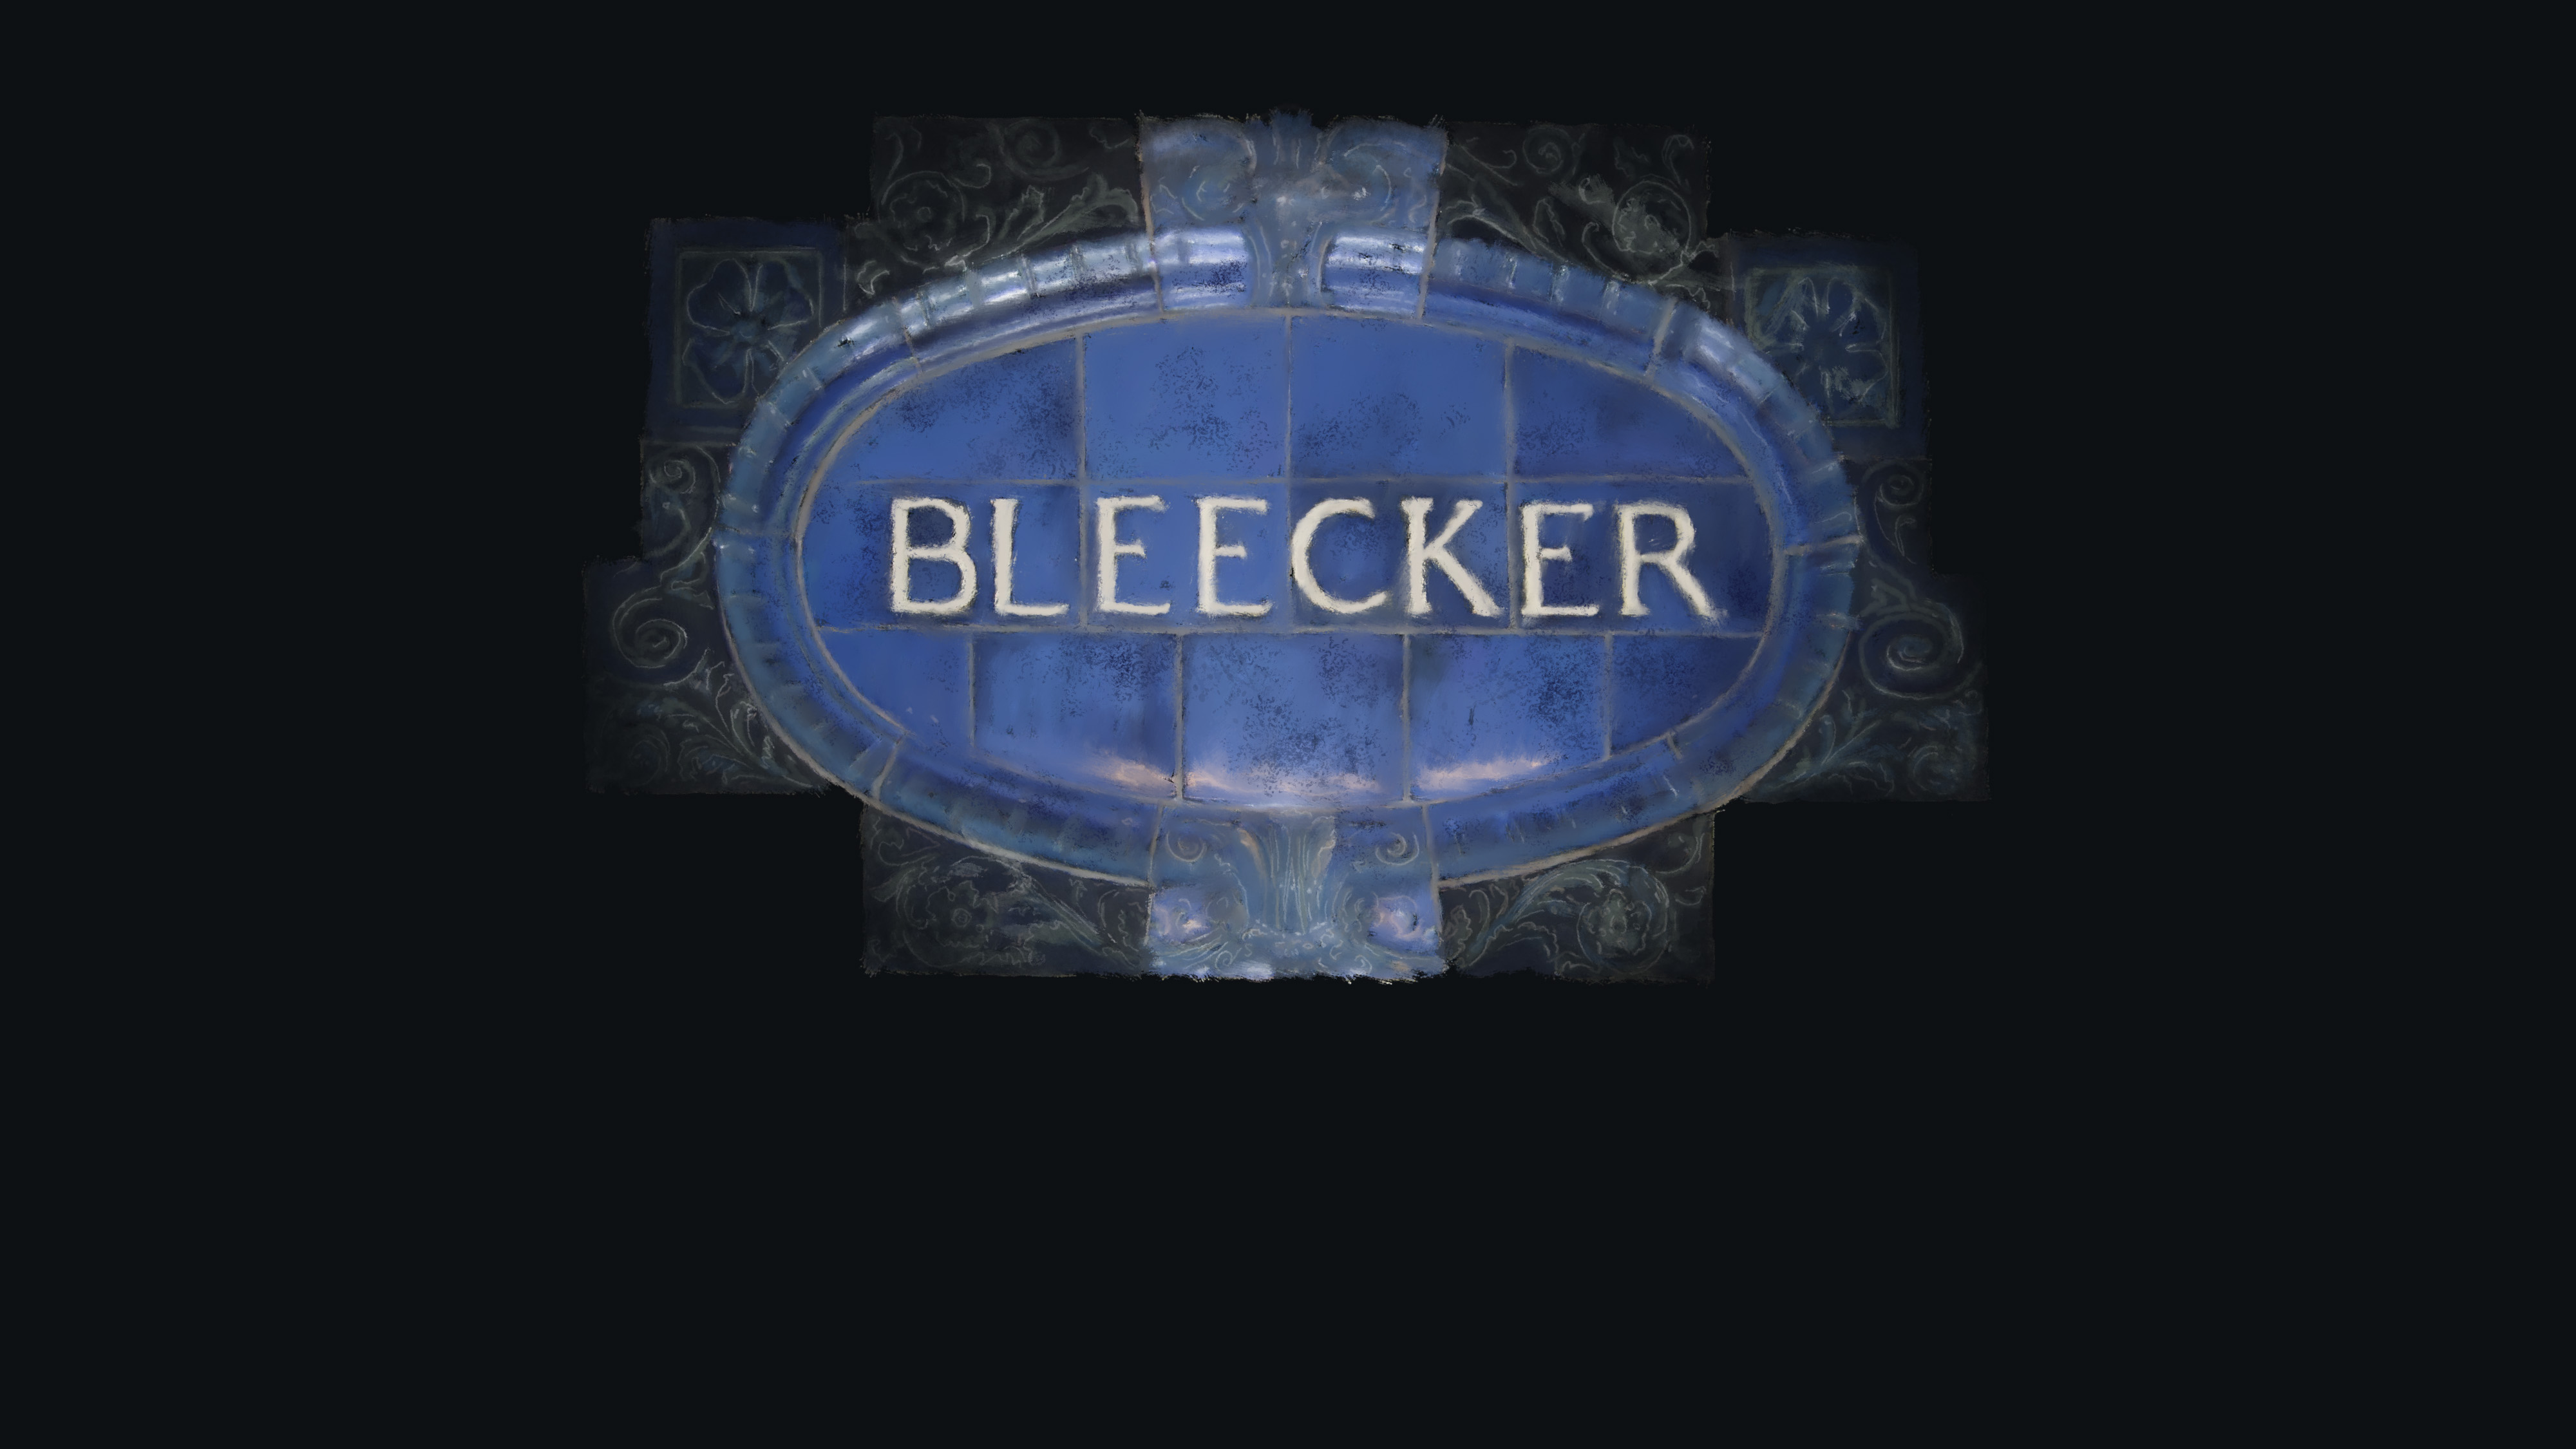 BLEECKER